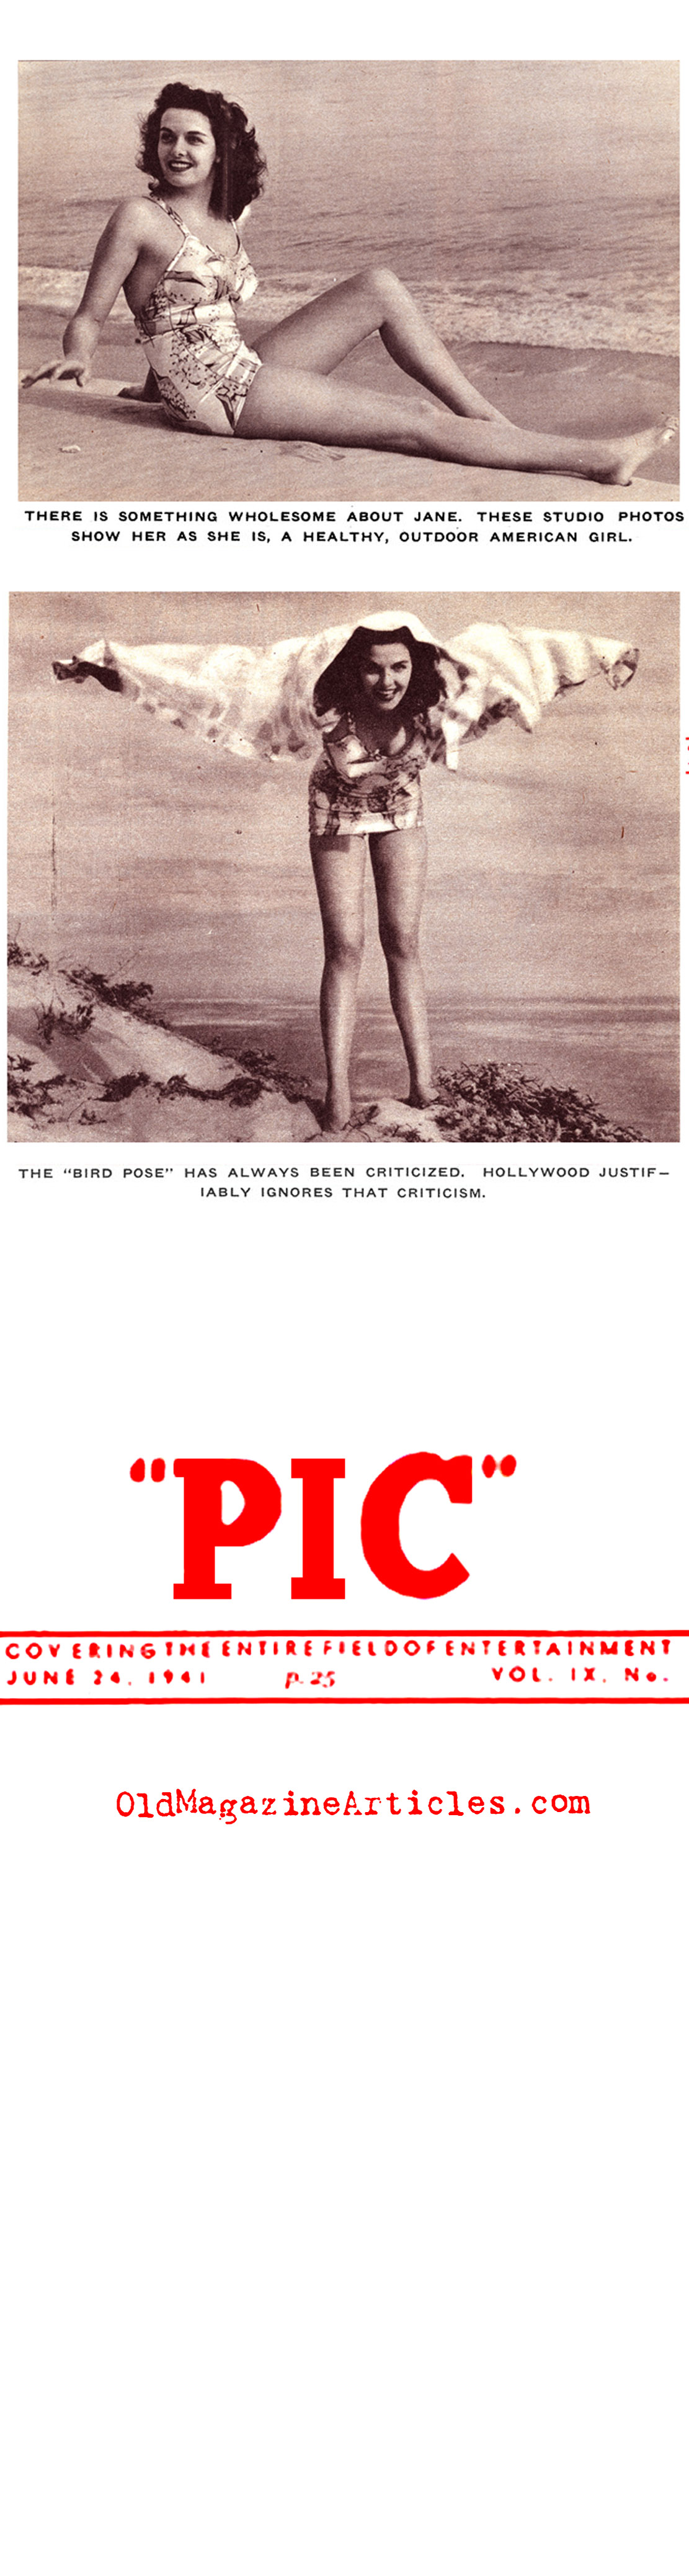 Jane Russell Sur la Plage... (Pic Magazine, 1941)